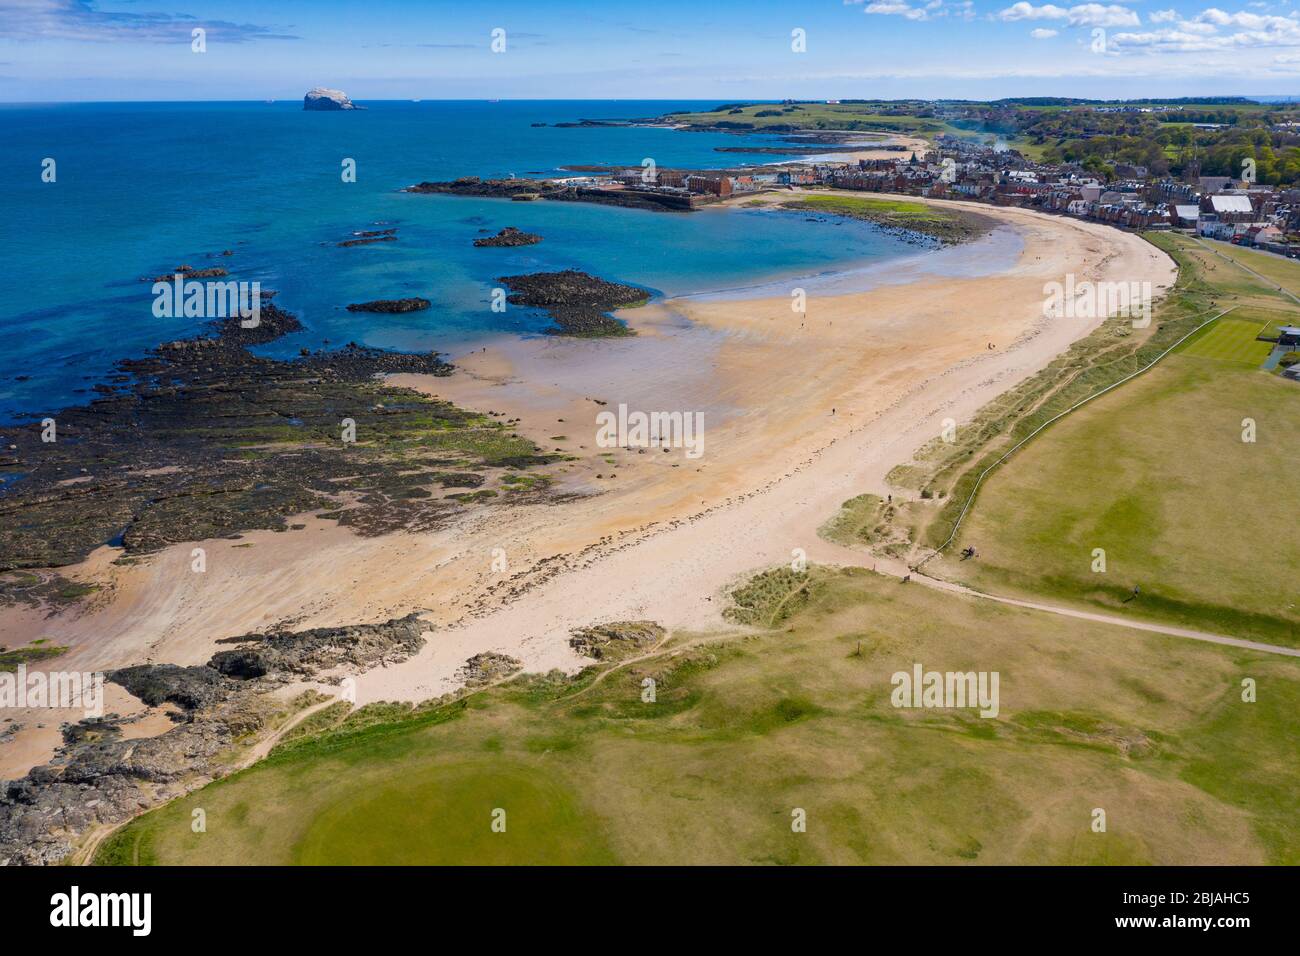 Luftaufnahme des North Berwick Beach und des North Berwick Golf Club, East Lothian, Schottland, Großbritannien Stockfoto